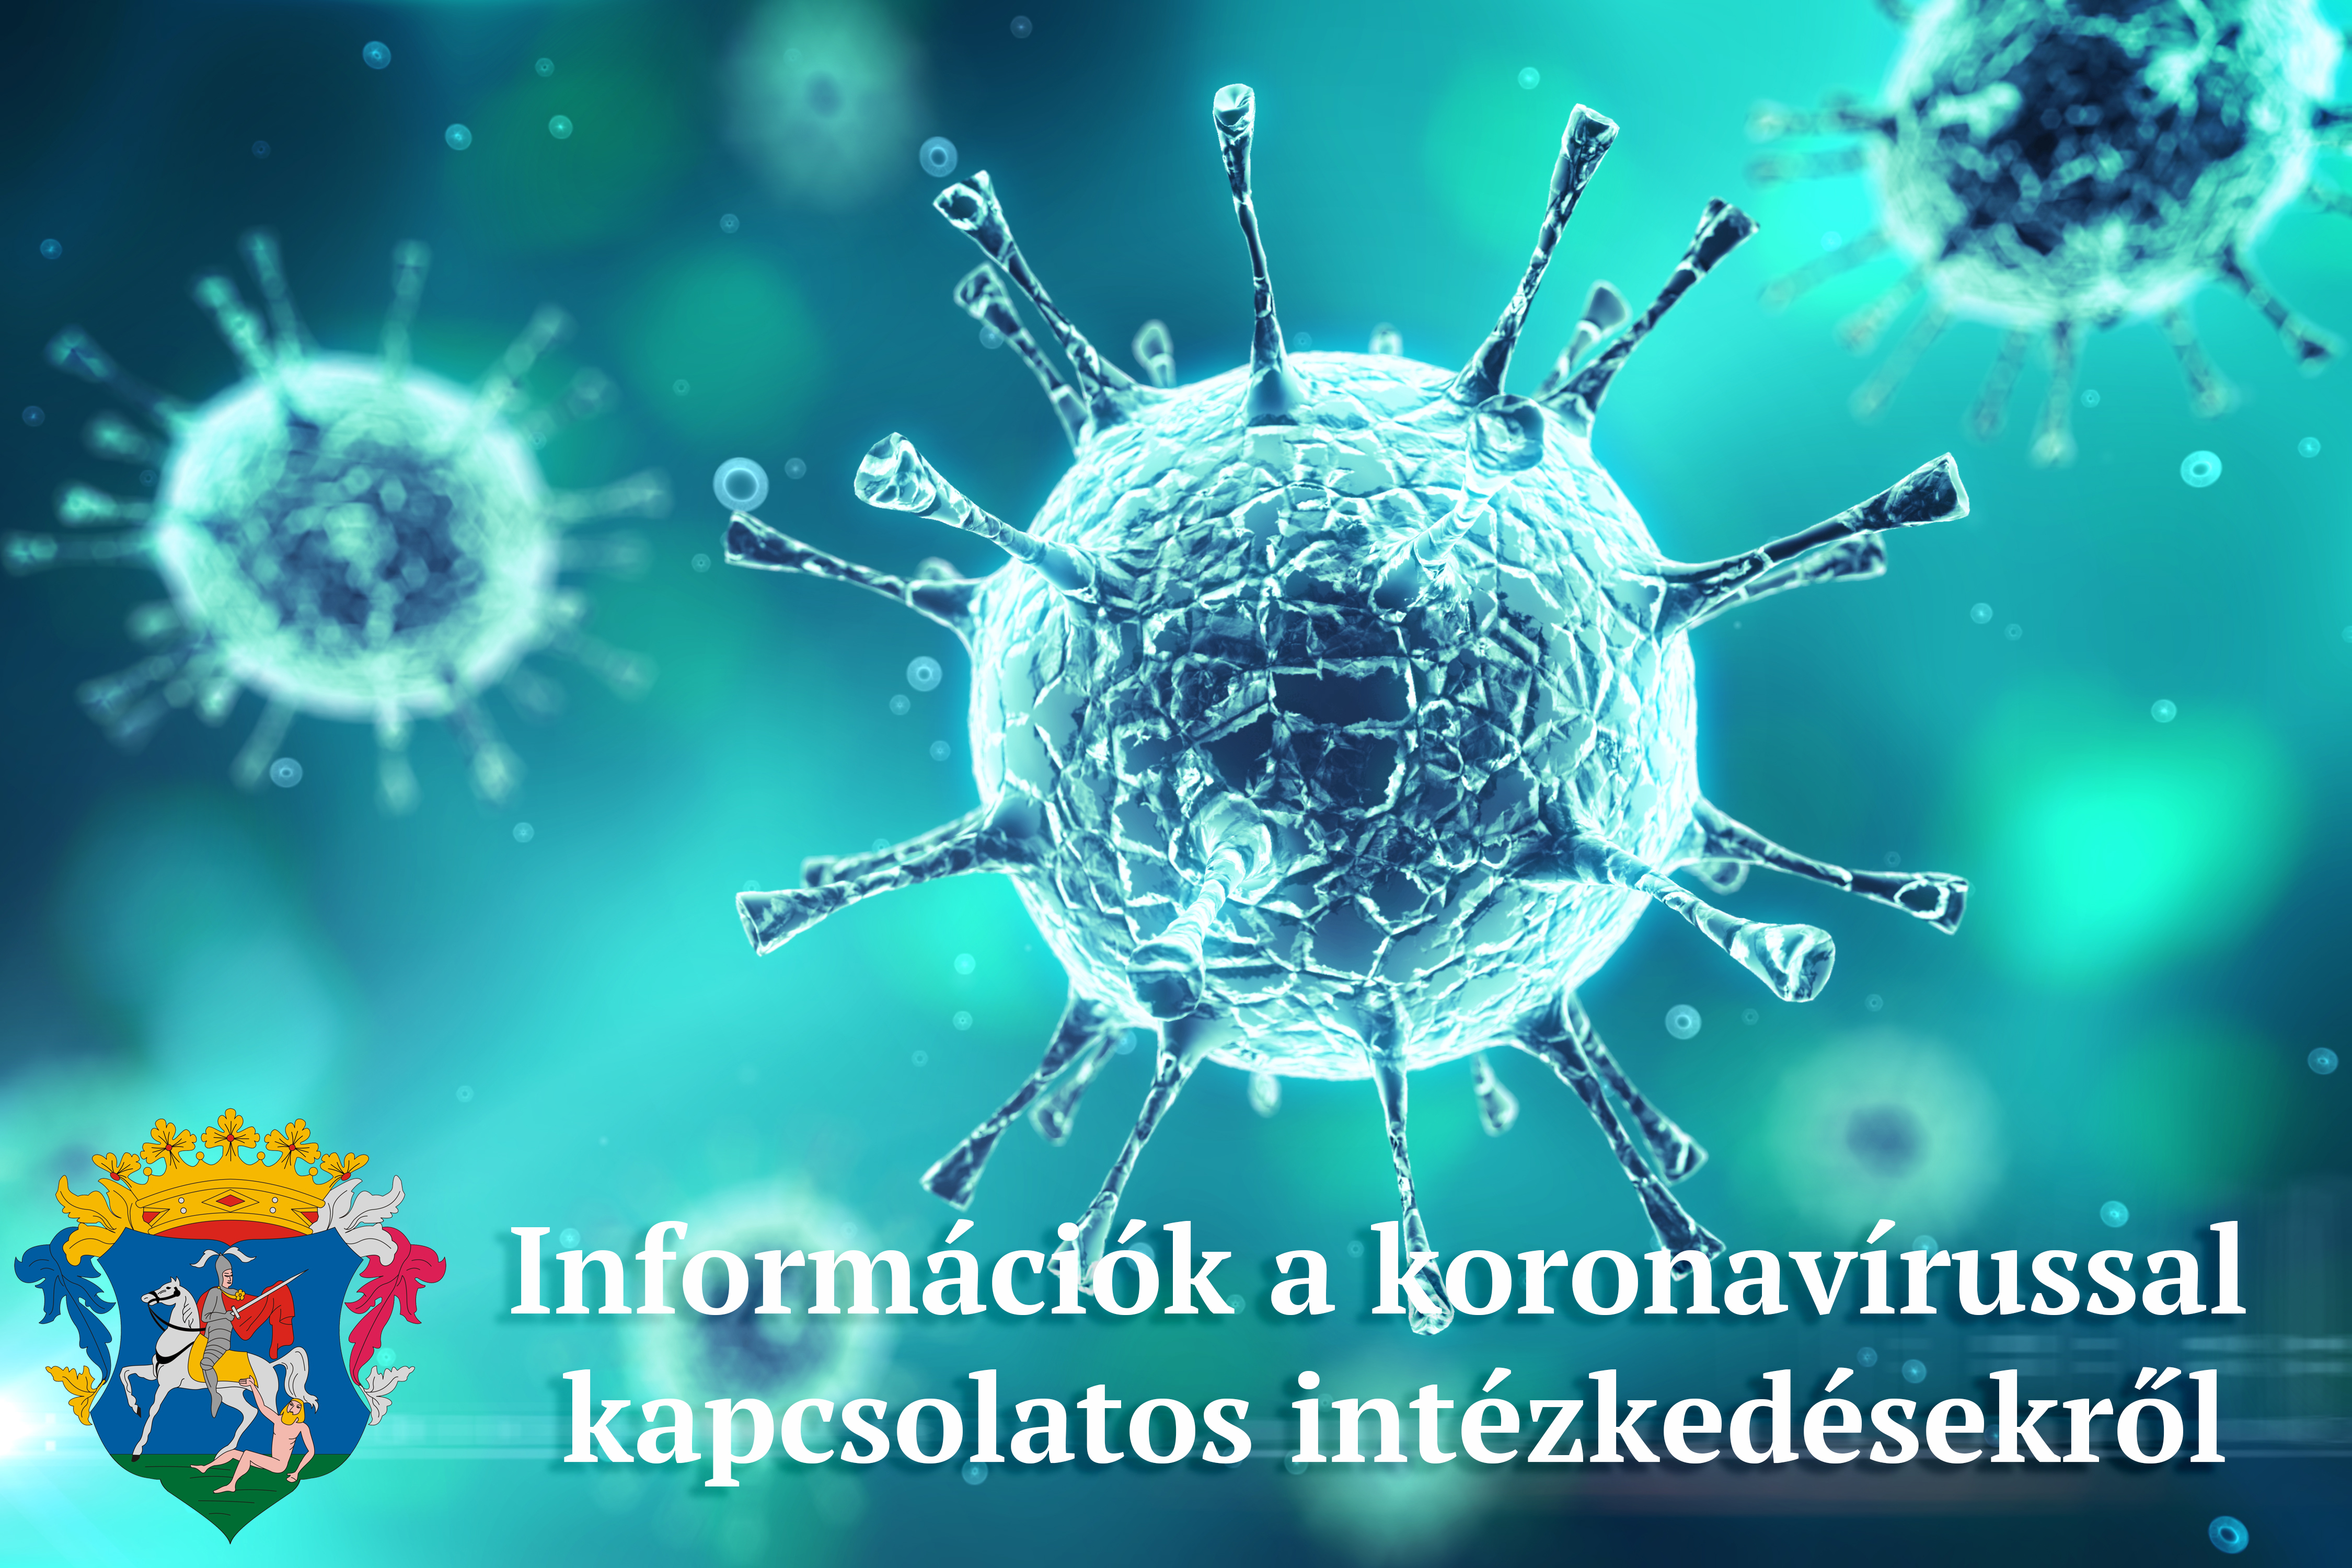 Információk a koronavírussal kapcsolatos intézkedésekről, döntésekről (2020. március és június között)